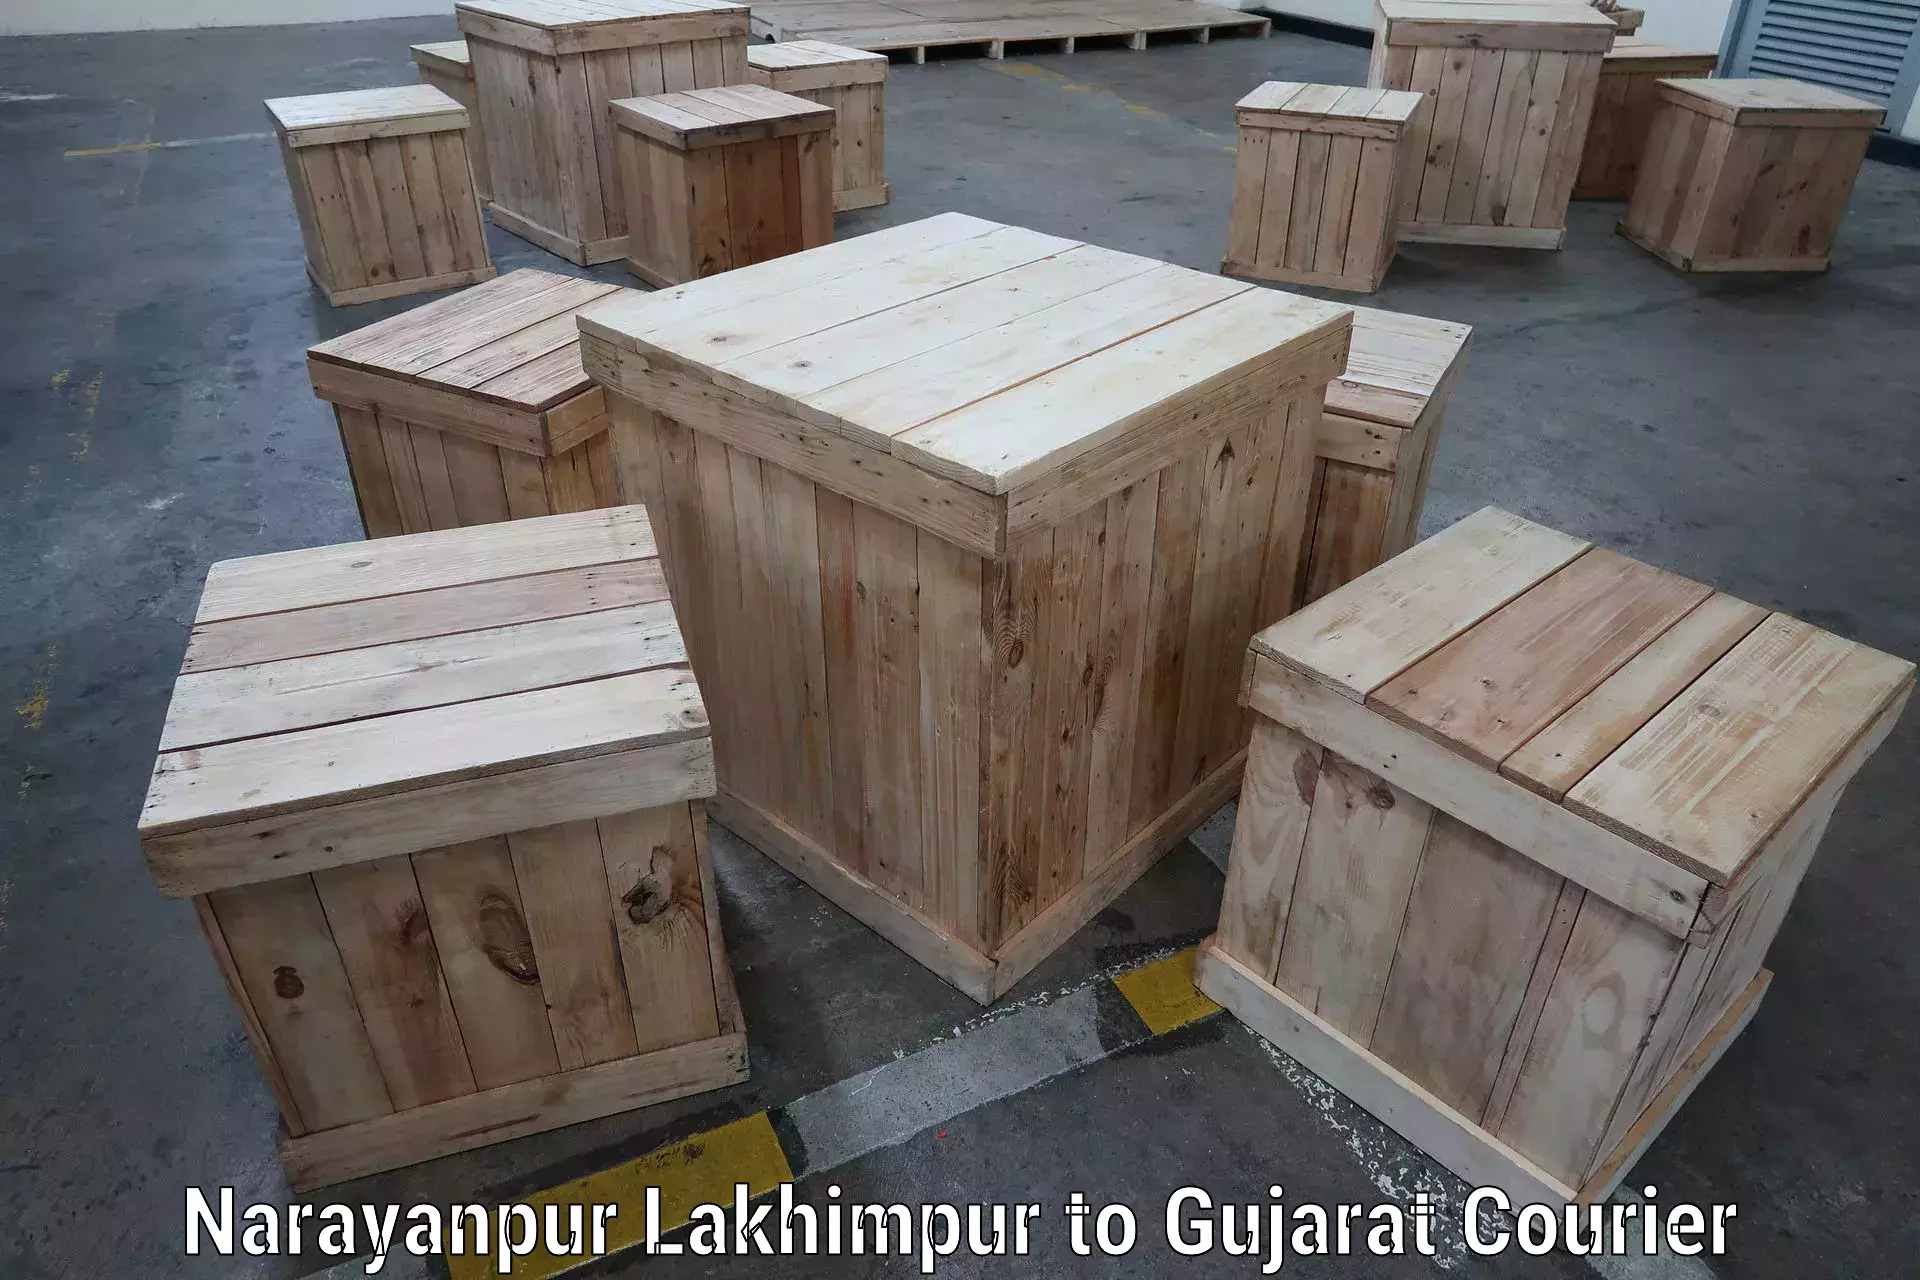 Cargo courier service Narayanpur Lakhimpur to Ambaji